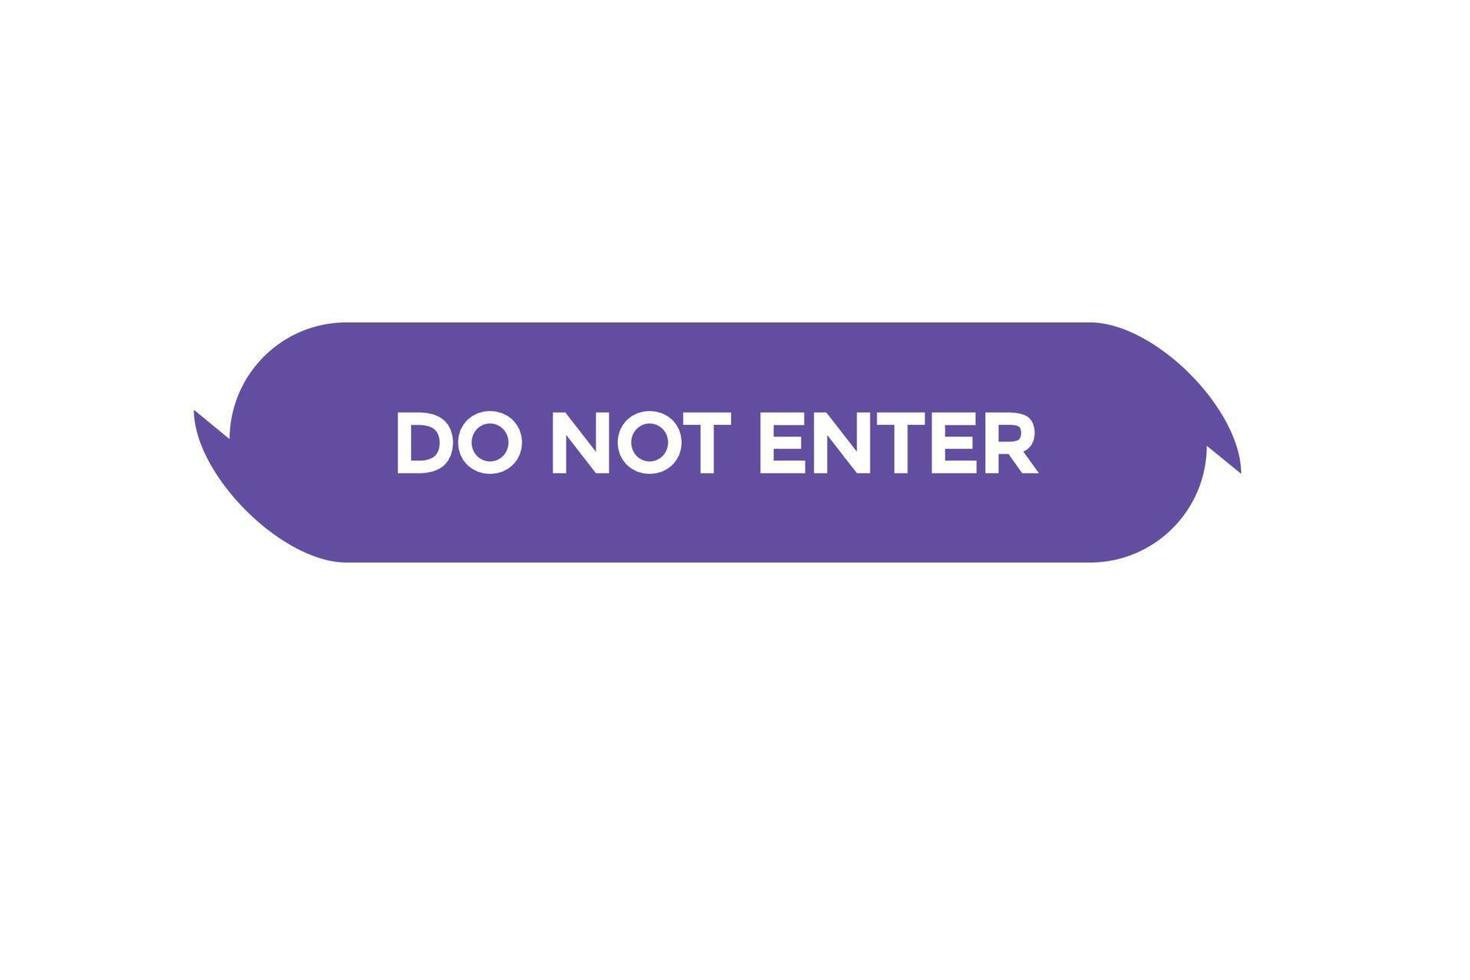 do not enter button vectors.sign label speech bubble do not enter vector